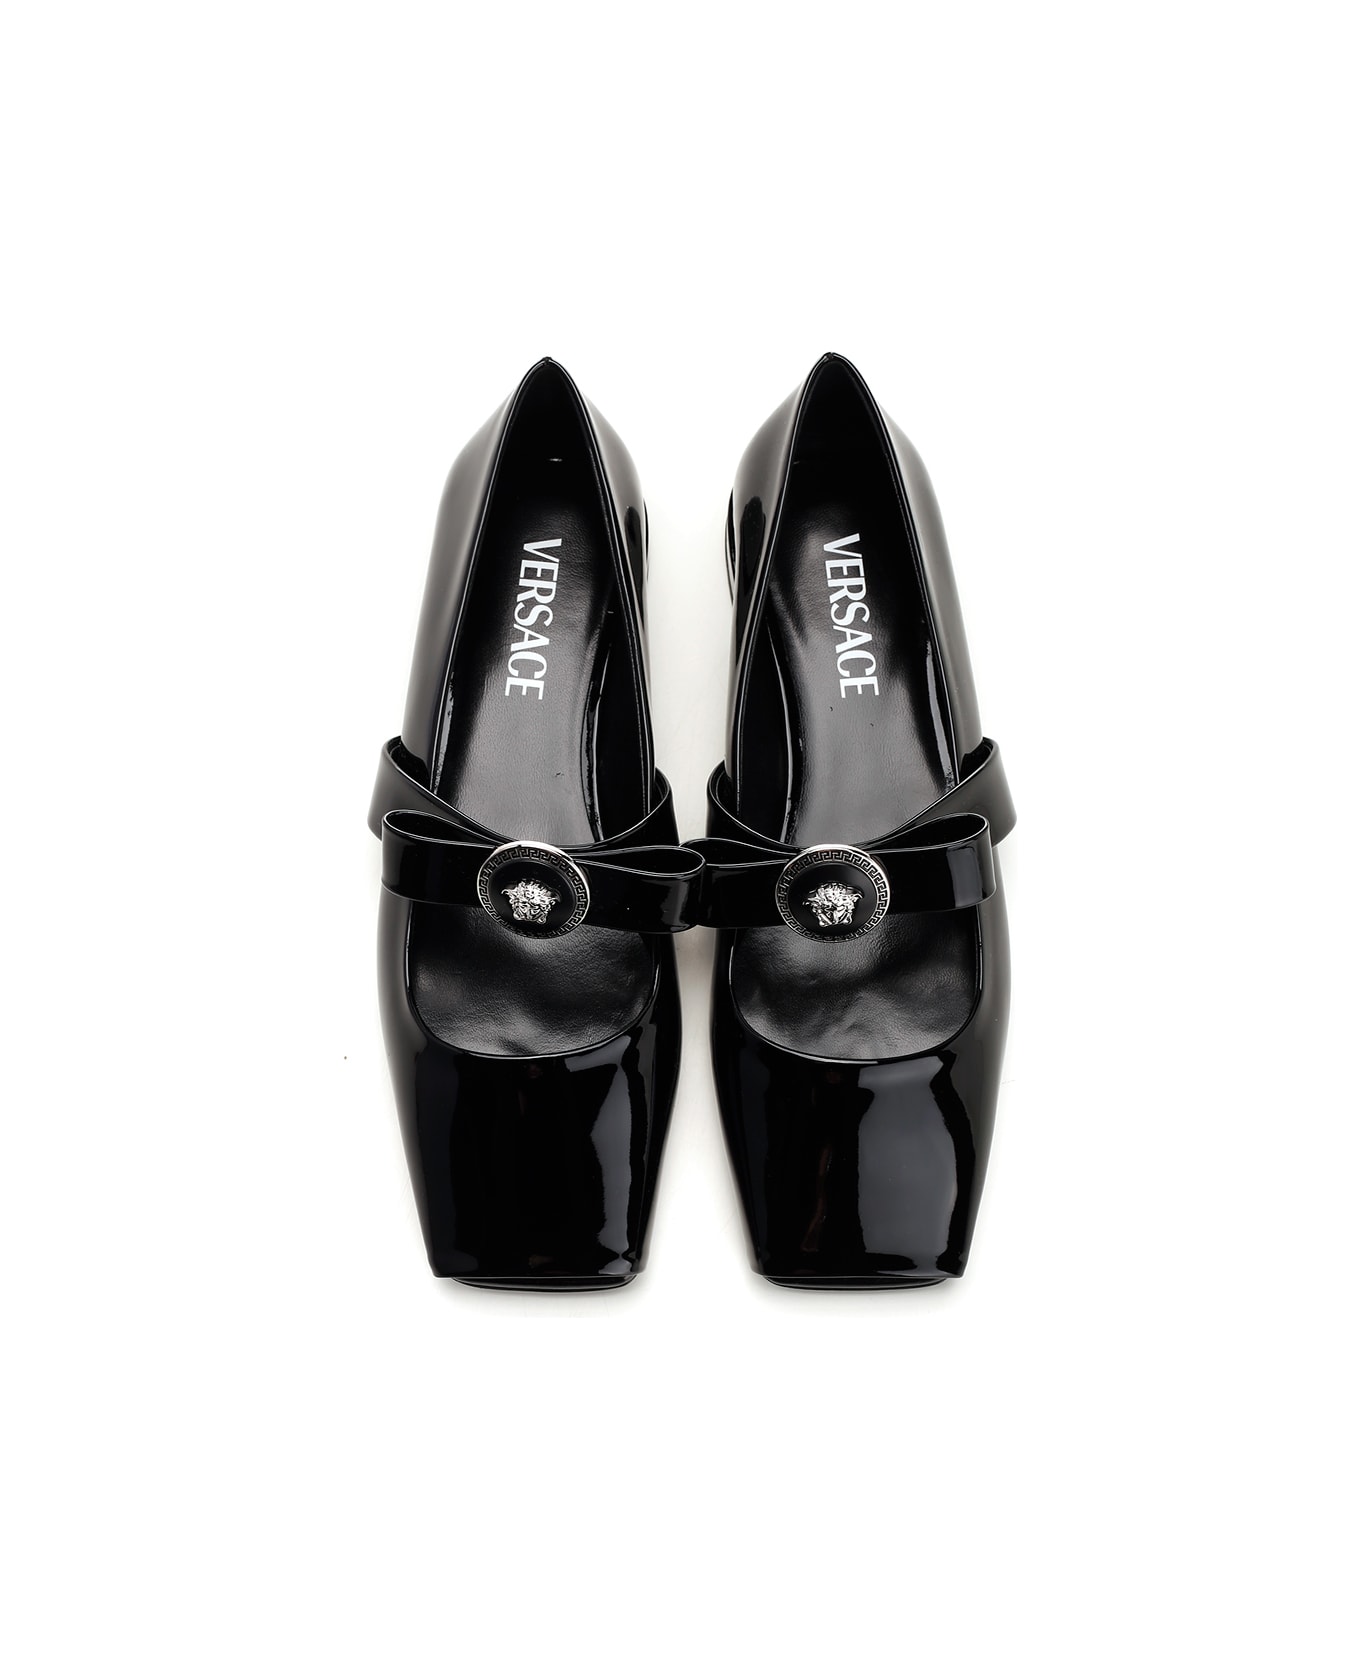 Versace Gianni Ribbon Square-toe Ballerina Shoes - BLACK PALLADIUM (Black)